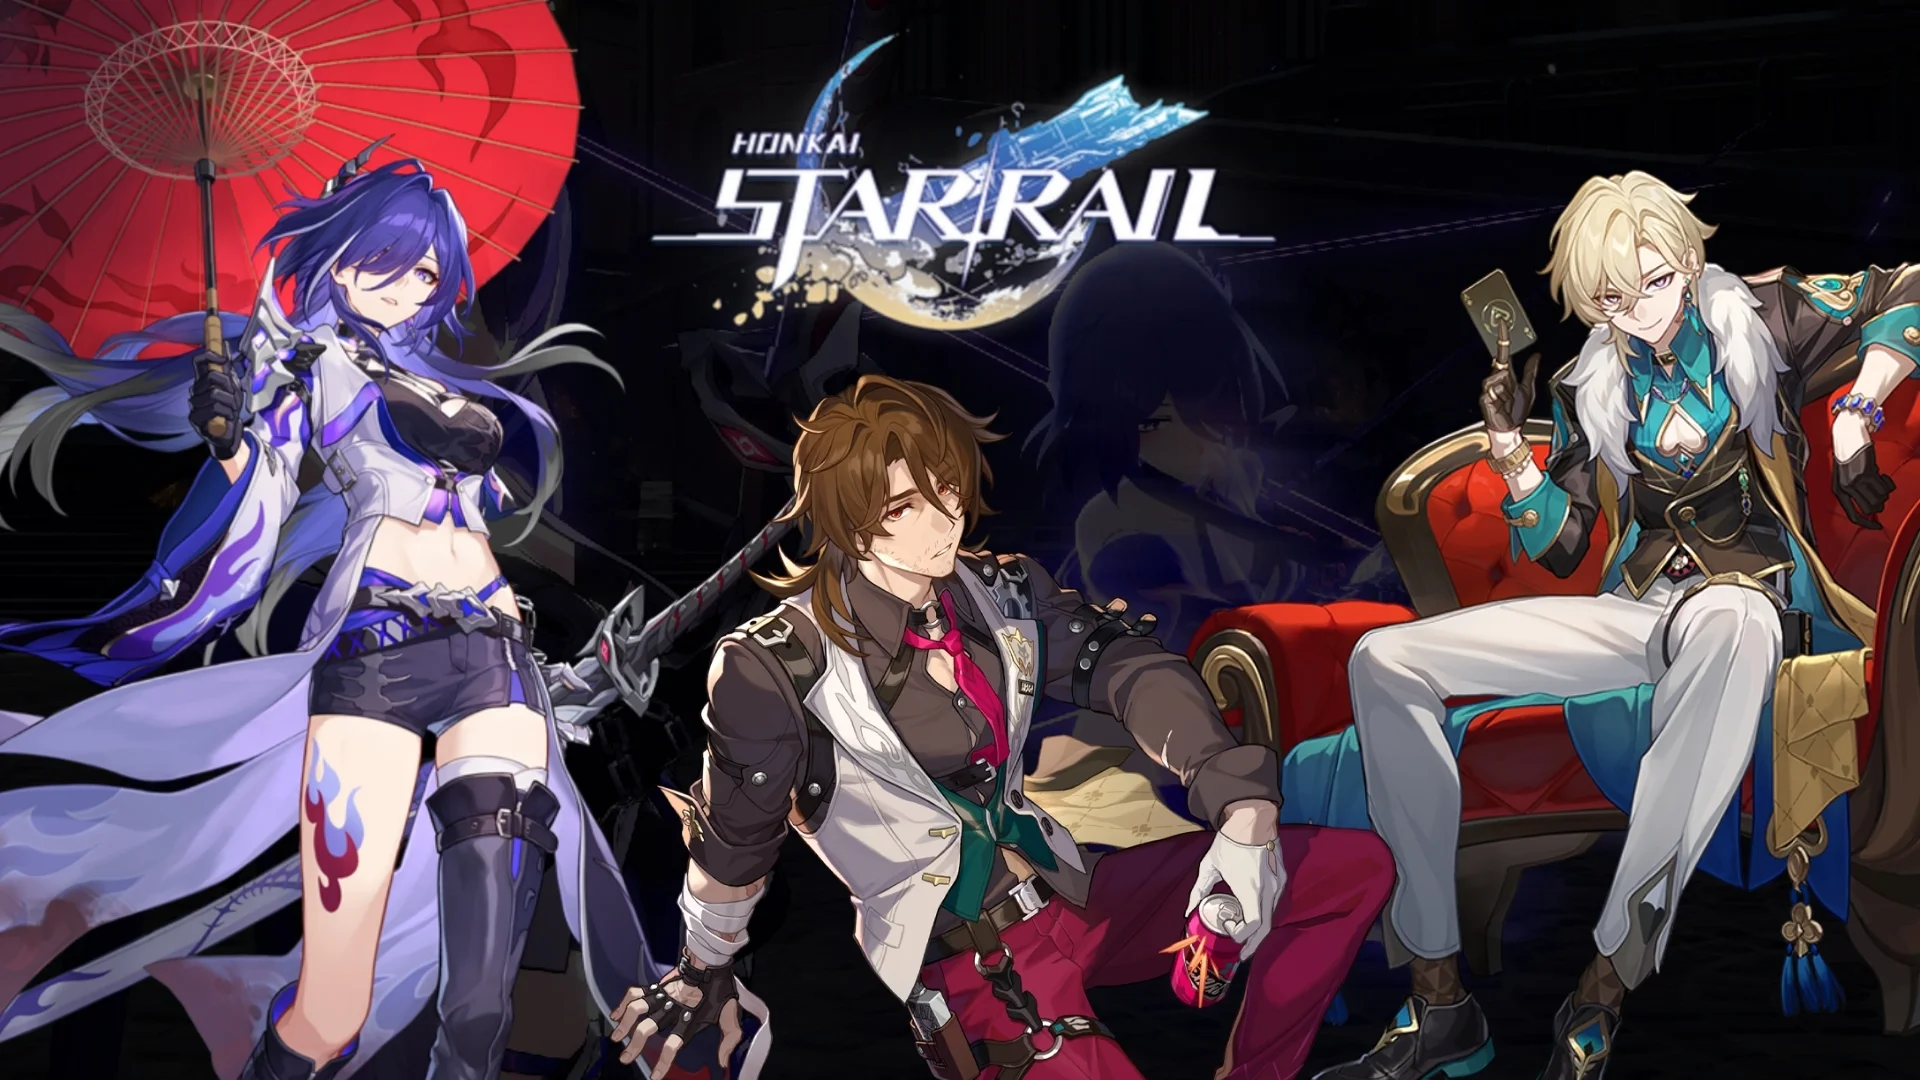 Honkai Star Rail 2.1 Characters and Banners, Rerun Leaks